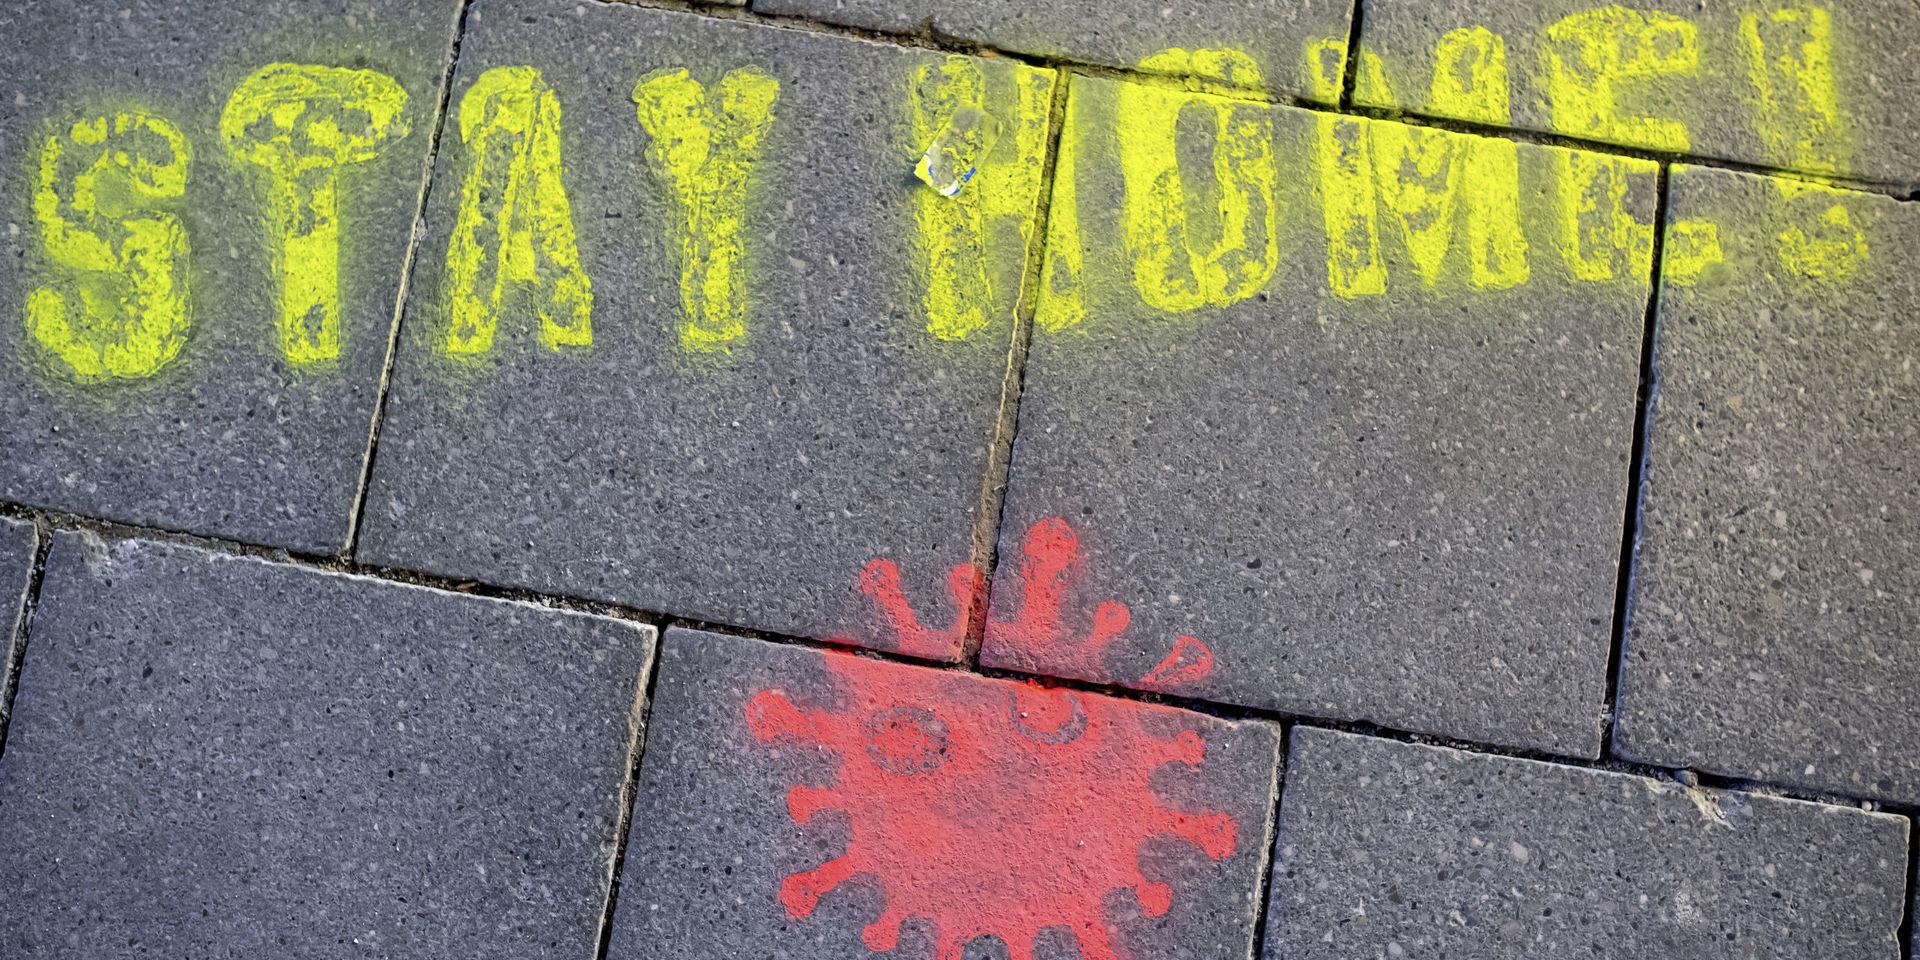 'Stanna hemma!'. Uppmaningen har sprejats på asfalten i München i Tyskland.